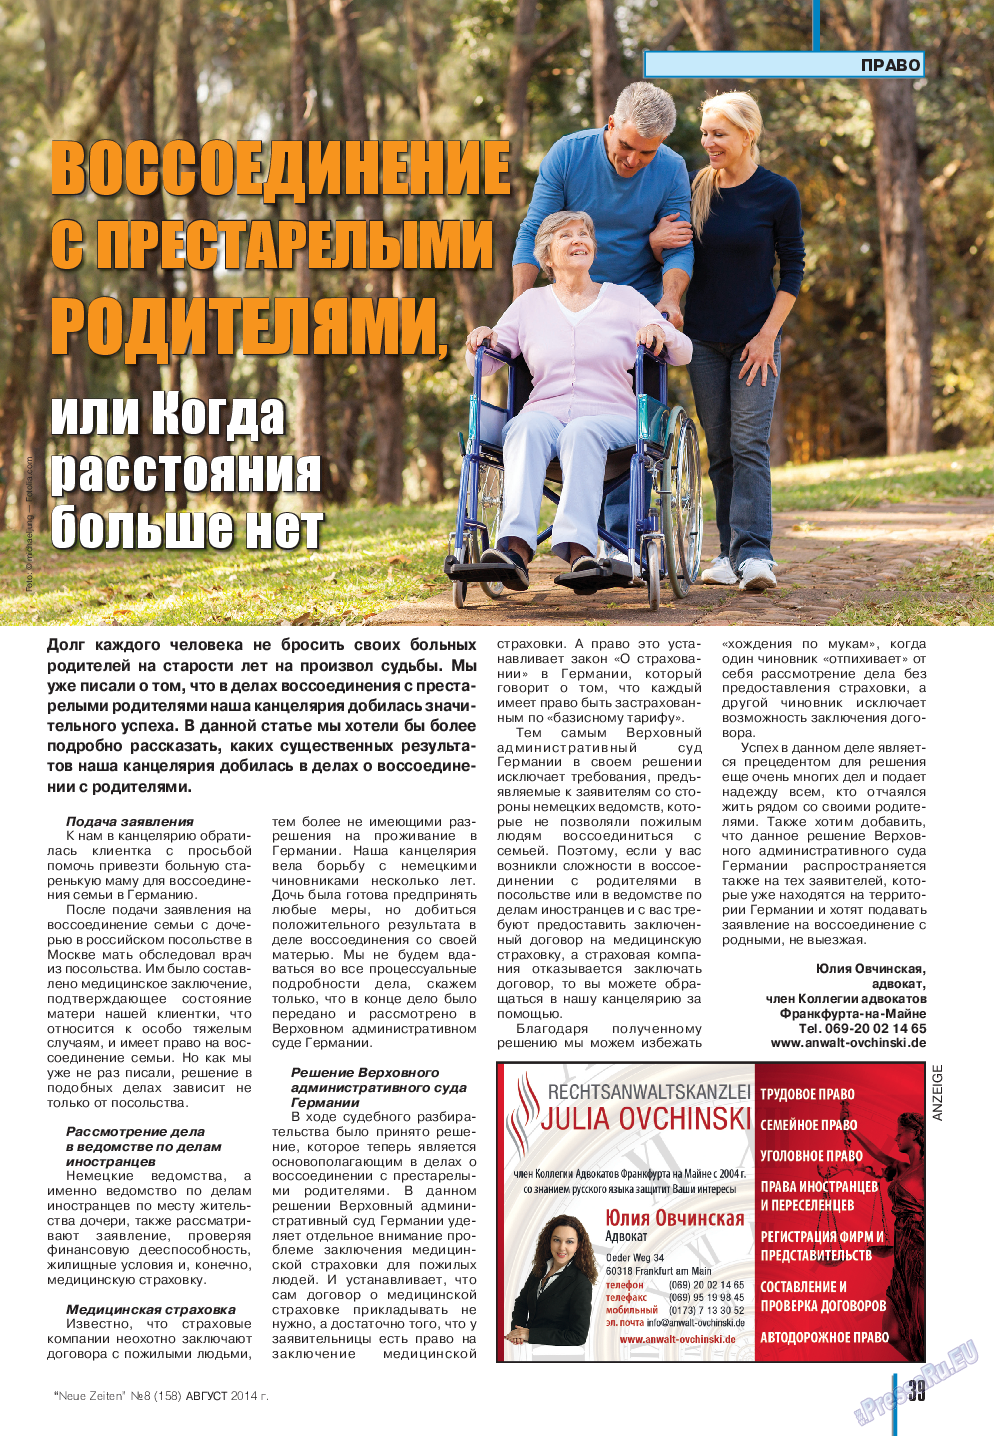 Neue Zeiten, журнал. 2014 №8 стр.39